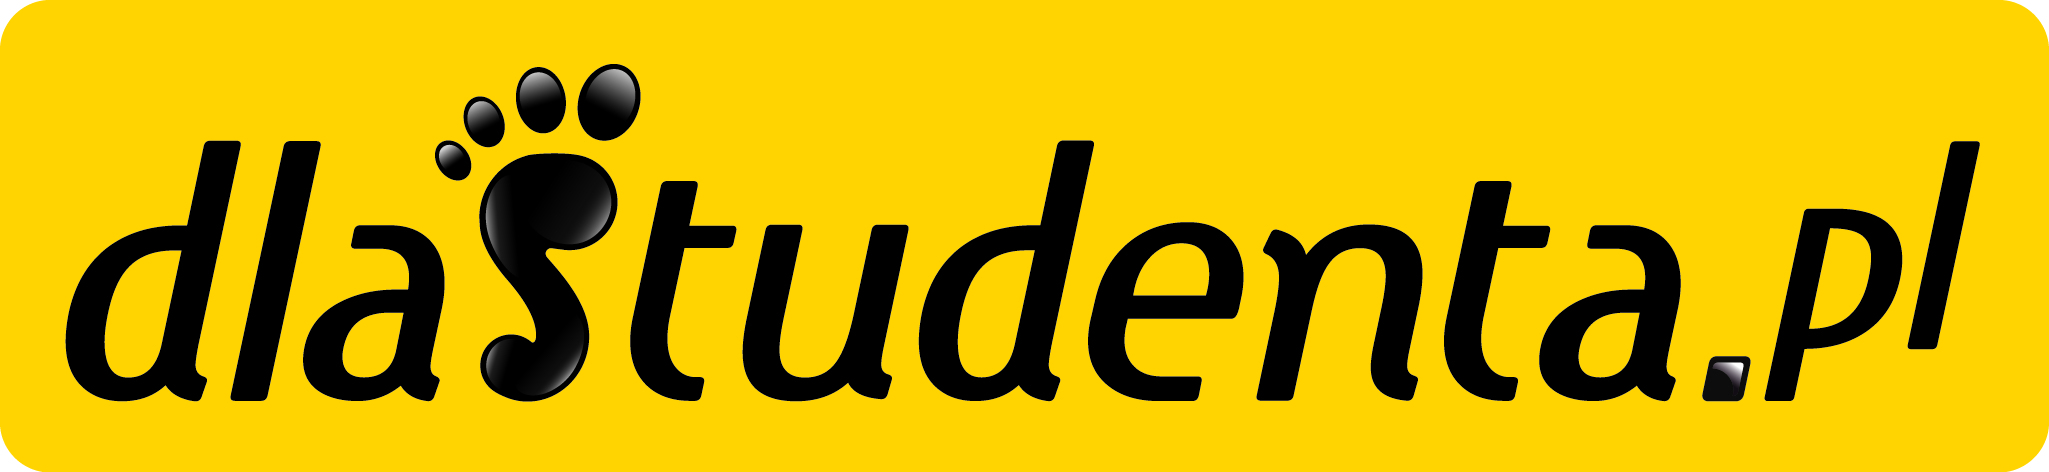 Logotyp portalu DlaStudenta.pl